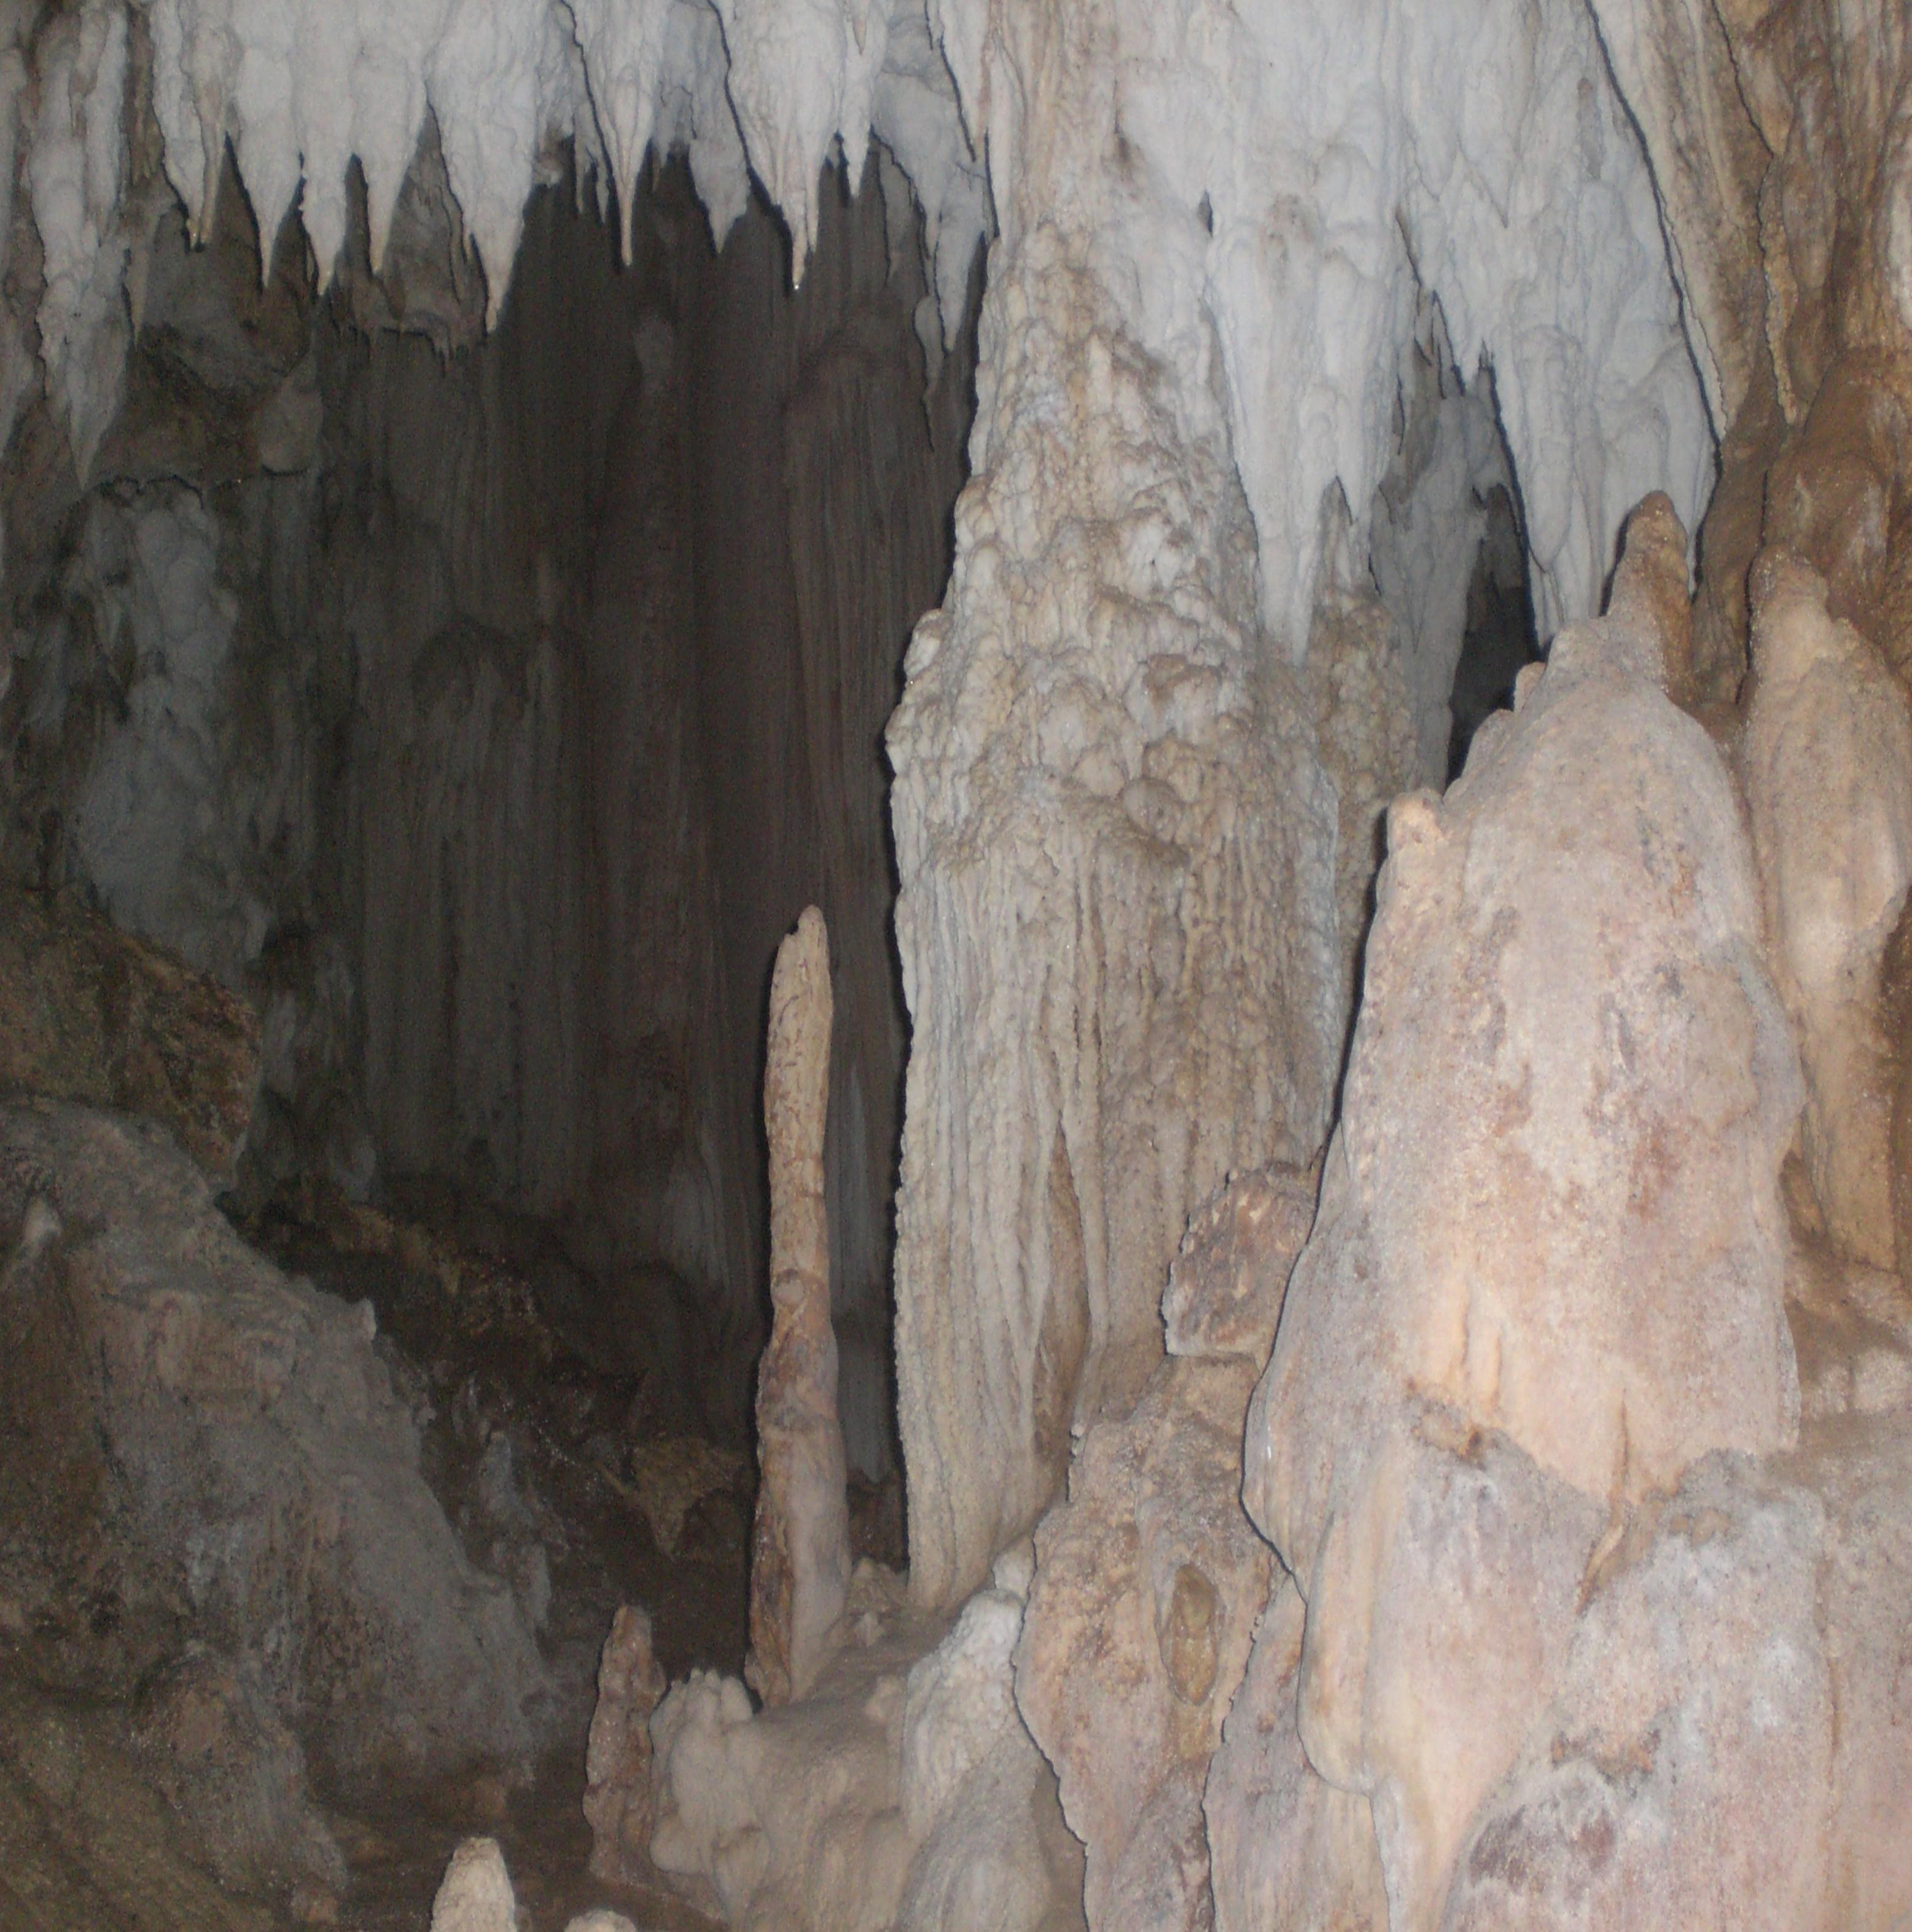 Puting Bato Cave